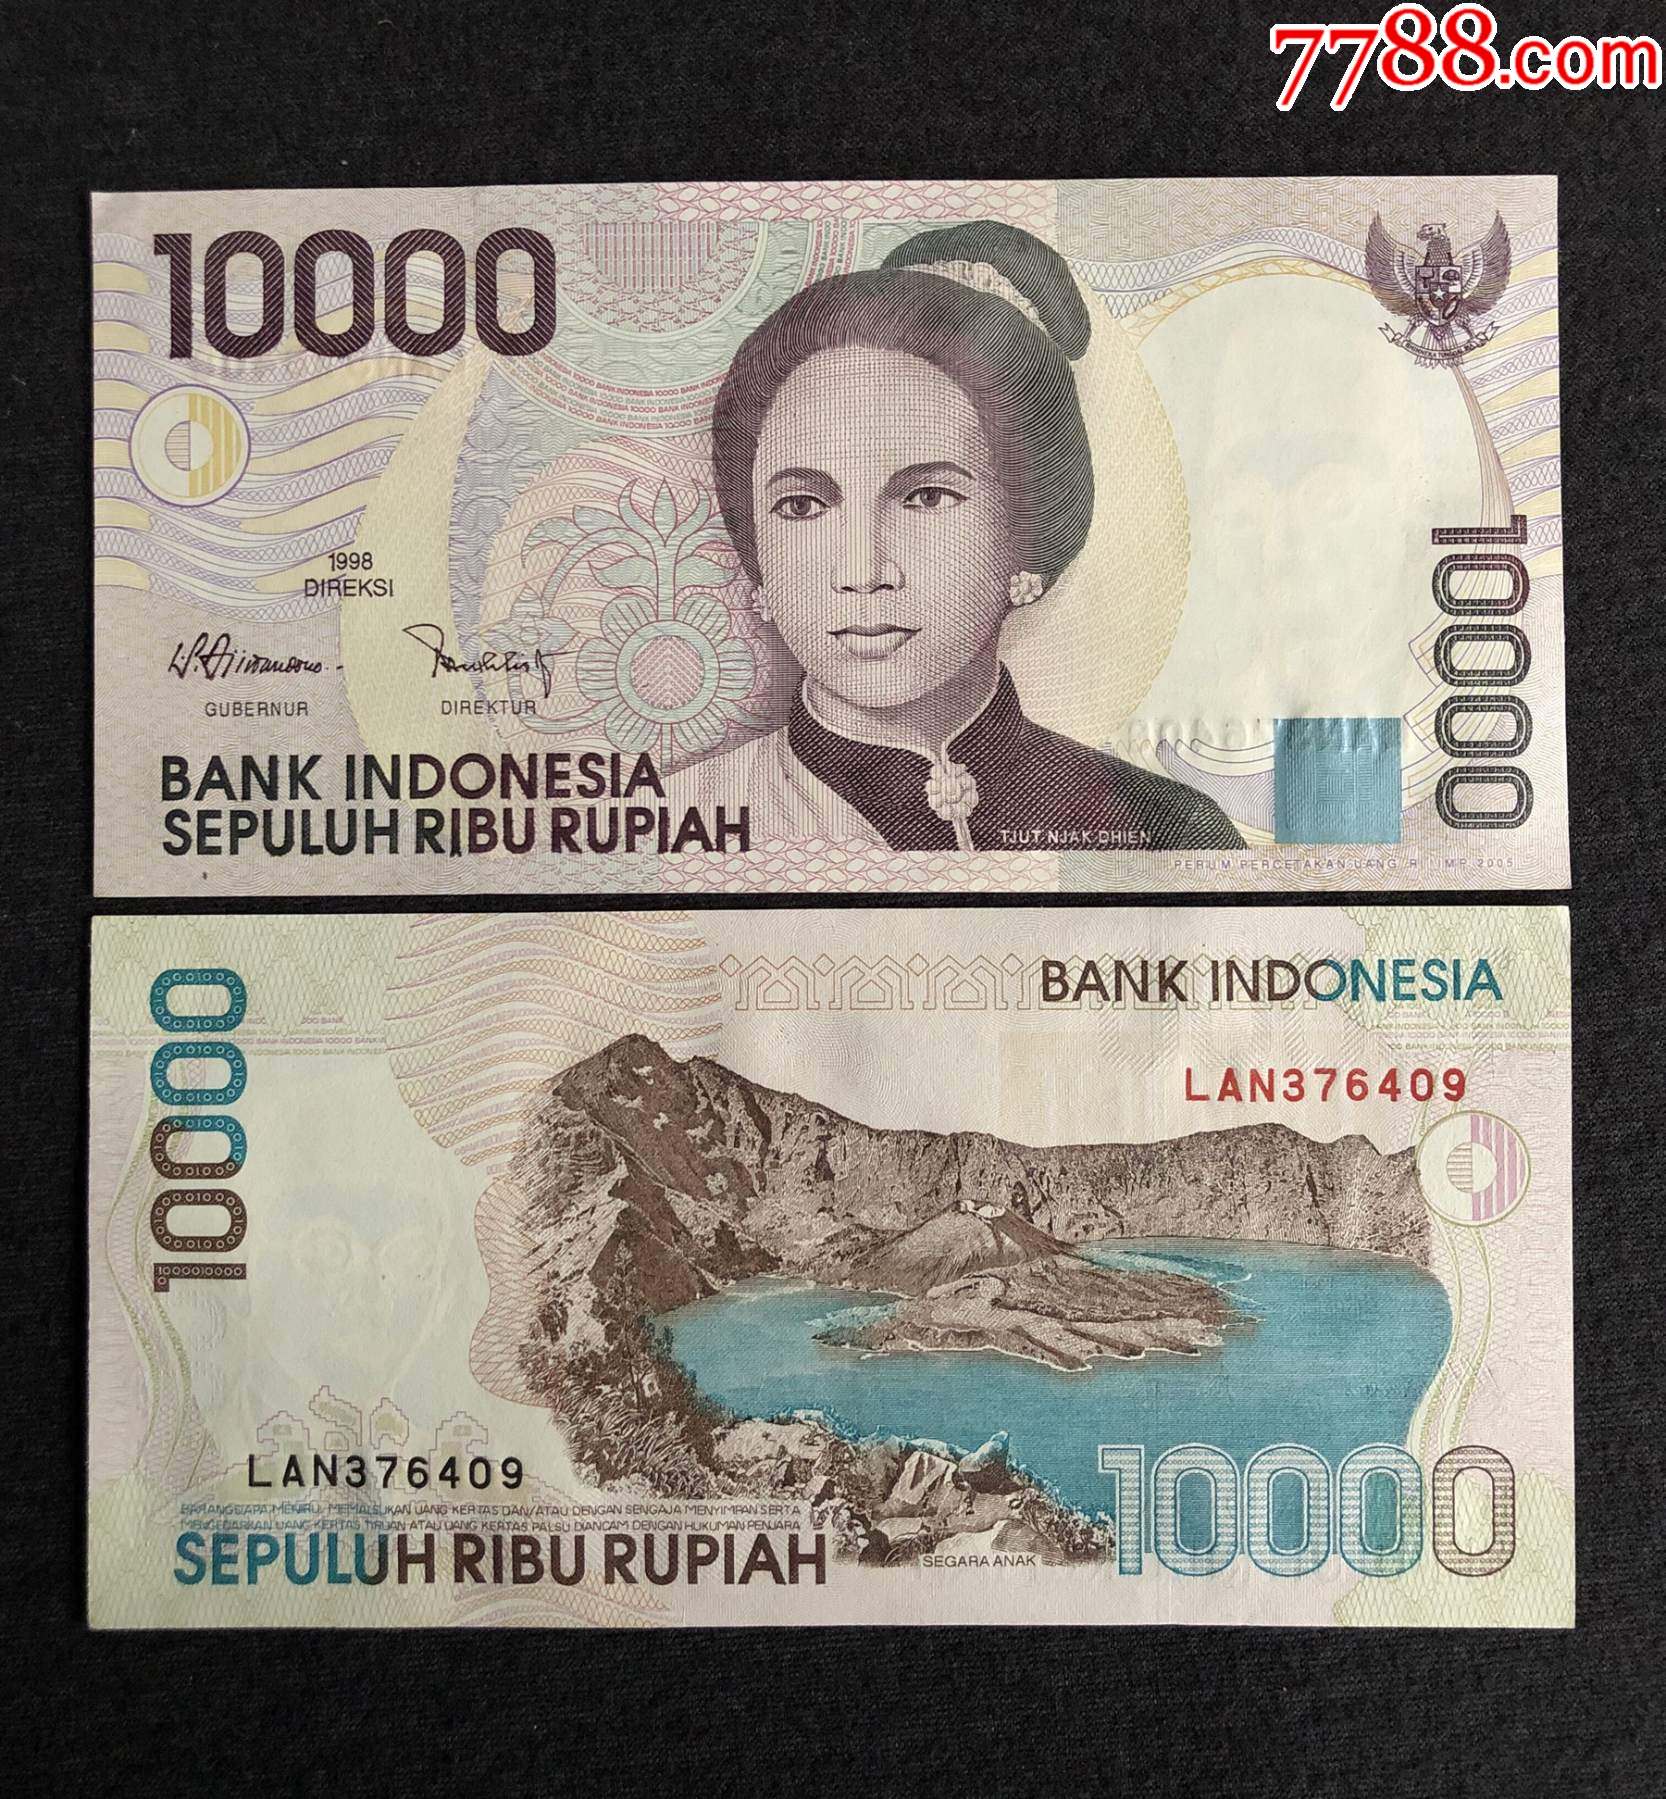 【亚洲】印度尼西亚10000卢比纸币1998年版外国纸币